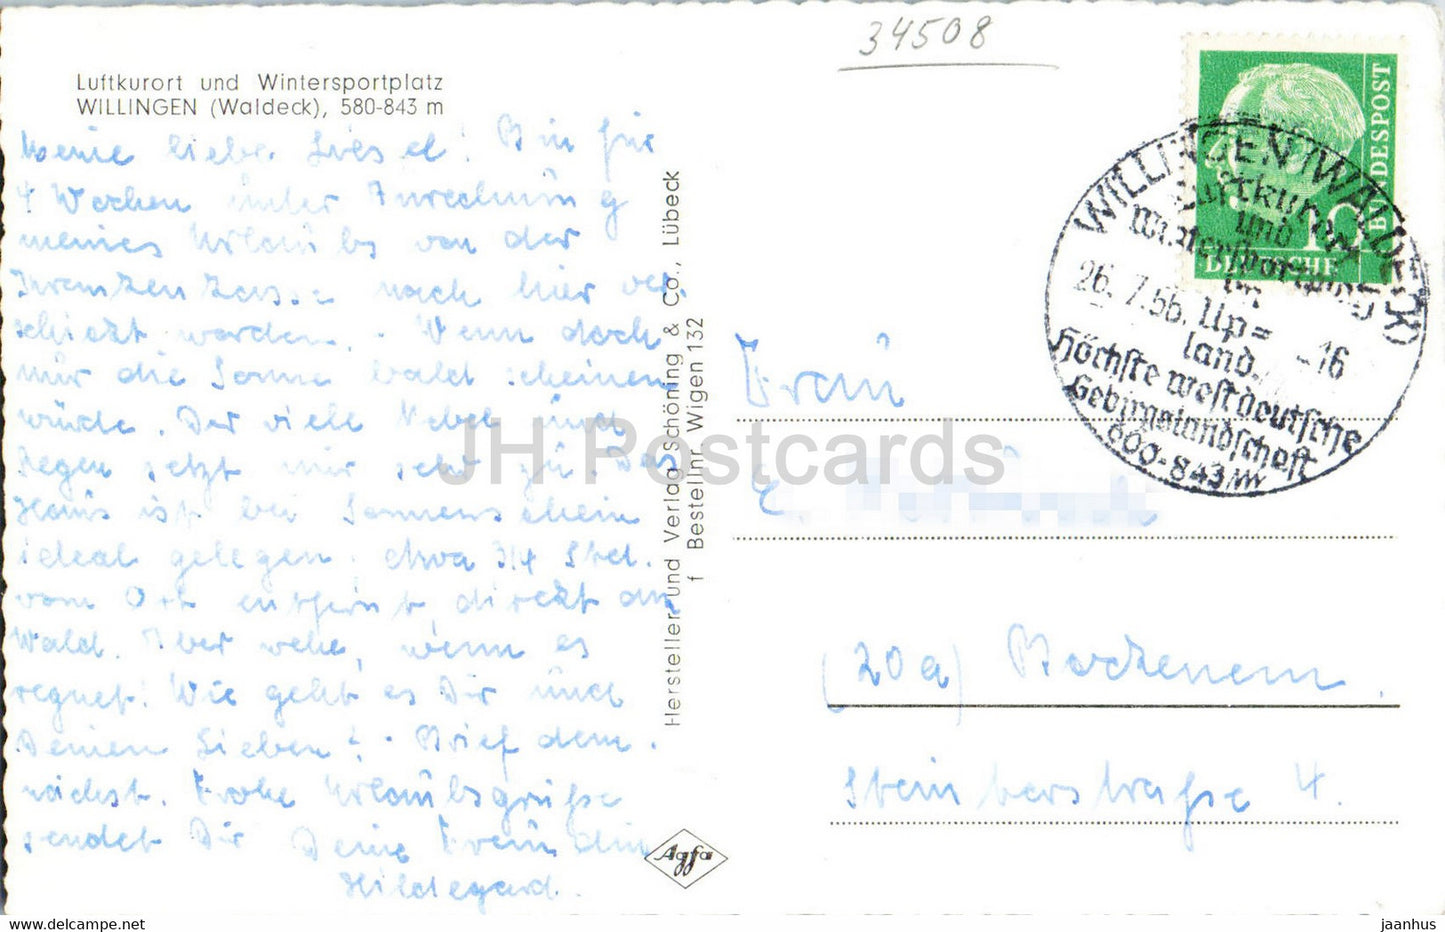 Willingen - Waldeck - 580 843 m - alte Postkarte - 1956 - Deutschland - gebraucht